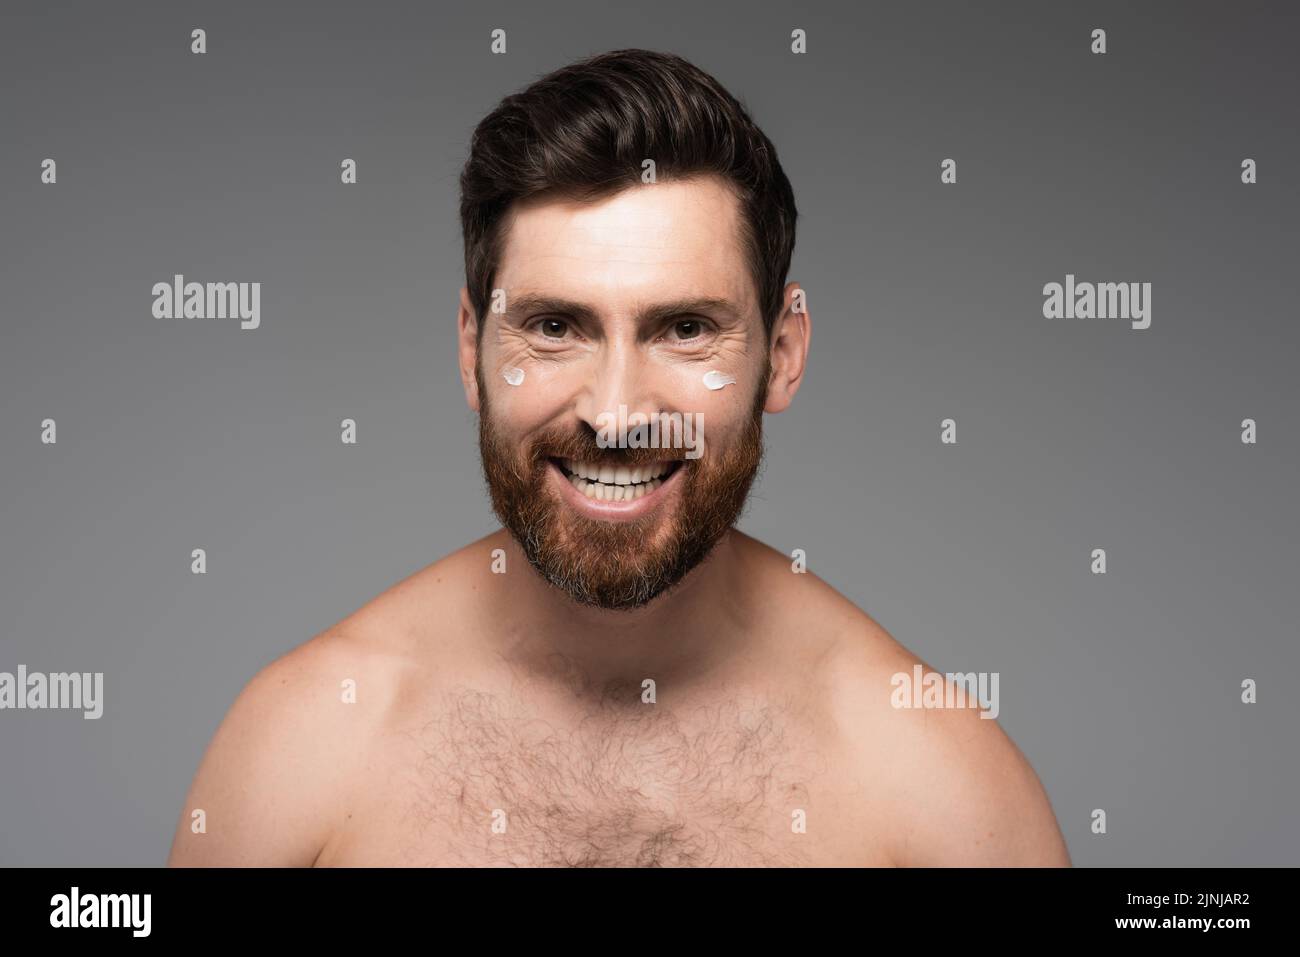 hombre alegre y barbudo con crema en la cara sonriendo aislado en gris, imagen de archivo Foto de stock